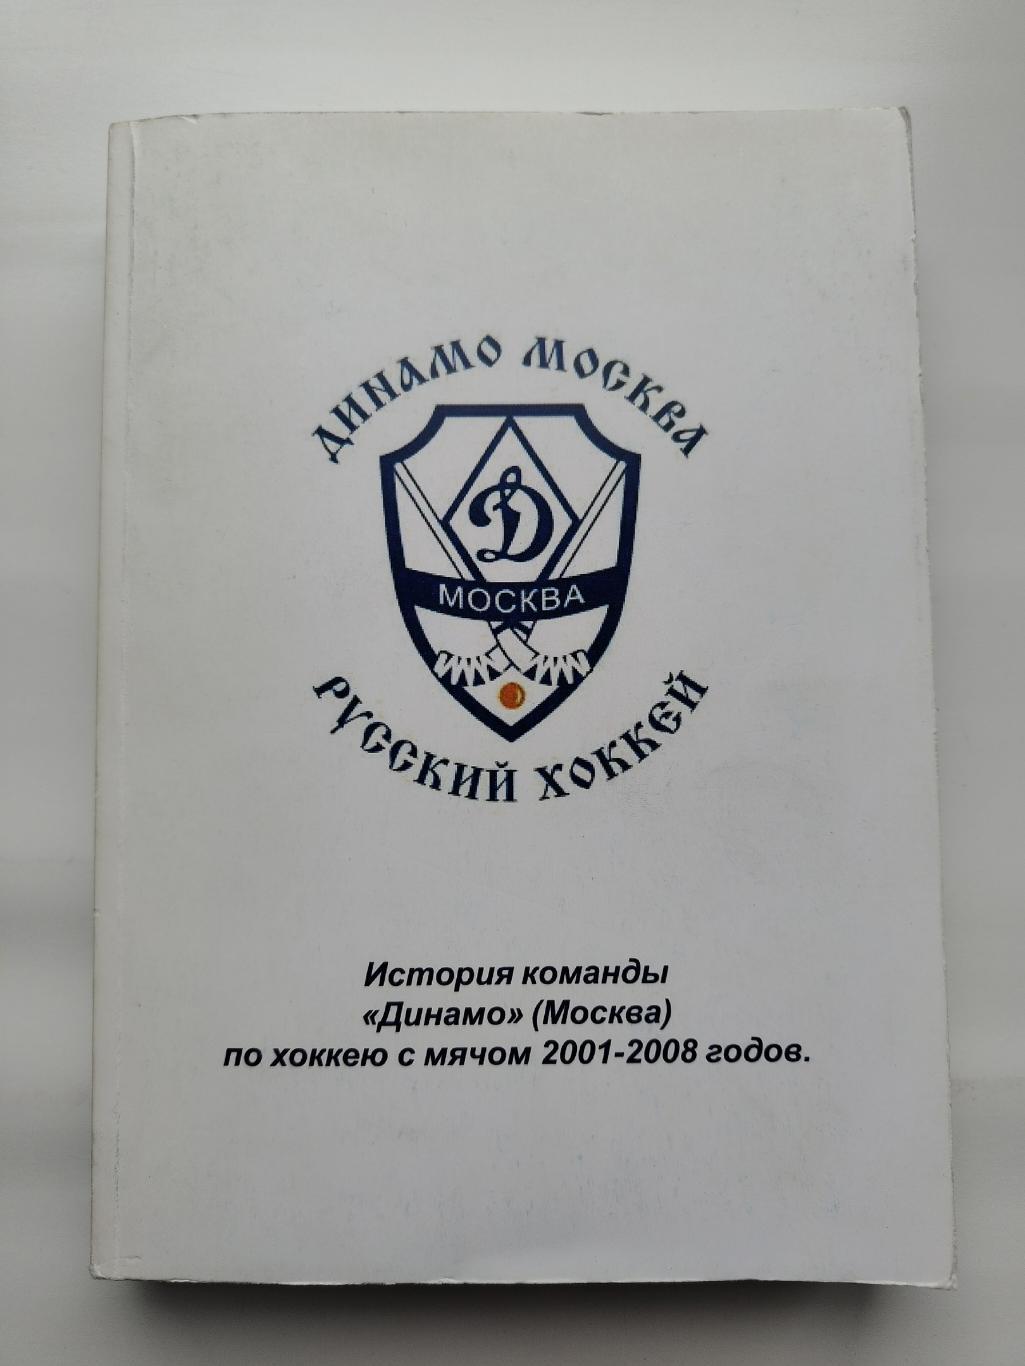 Хоккей с мячом. История команды Динамо Москва 2001-2008 (430 страниц)